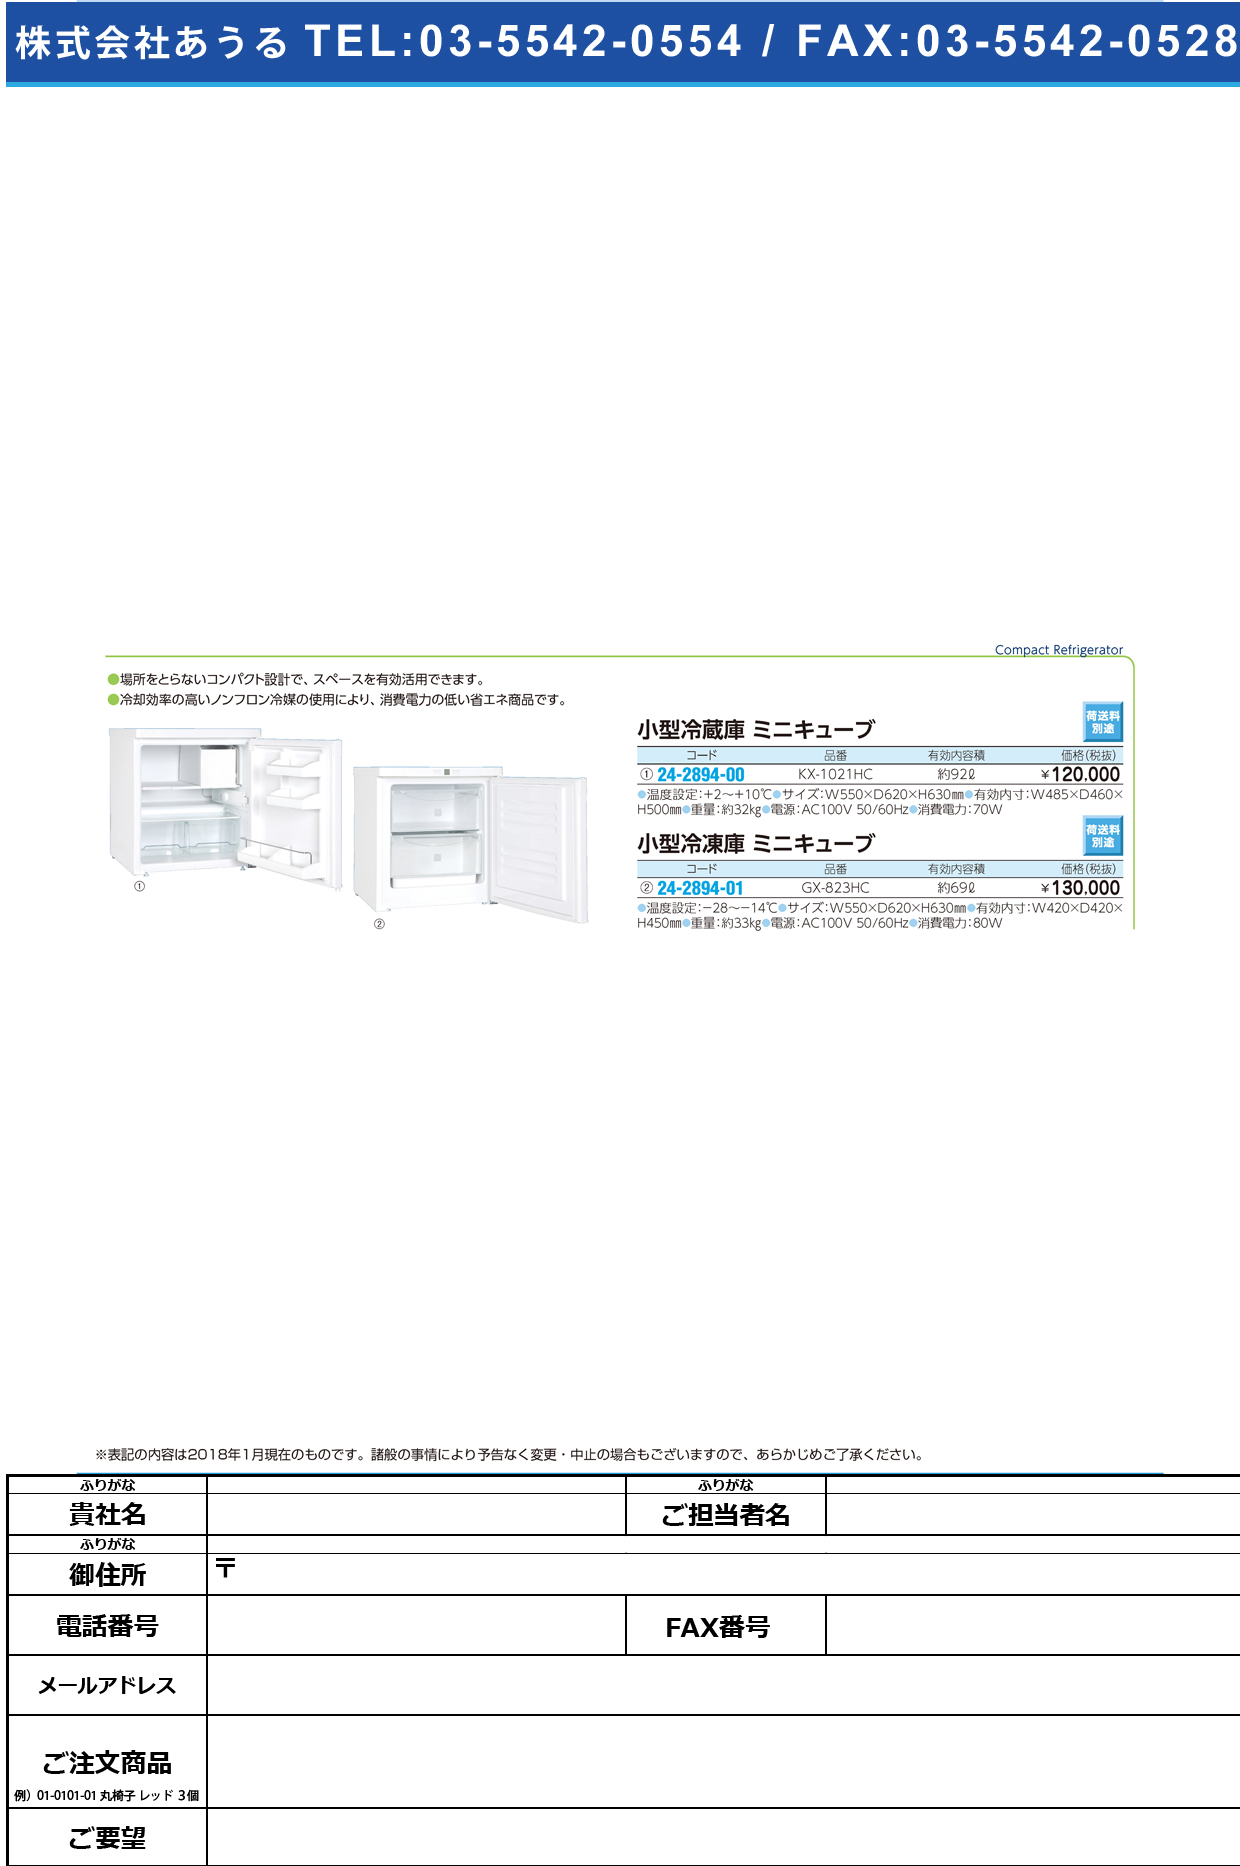 (24-2894-00)小型冷蔵庫ミニキューブ KX-1021HC(92L) ｺｶﾞﾀﾚｲｿﾞｳｺﾐﾆｷｭｰﾌﾞ(日本フリーザー)【1台単位】【2019年カタログ商品】